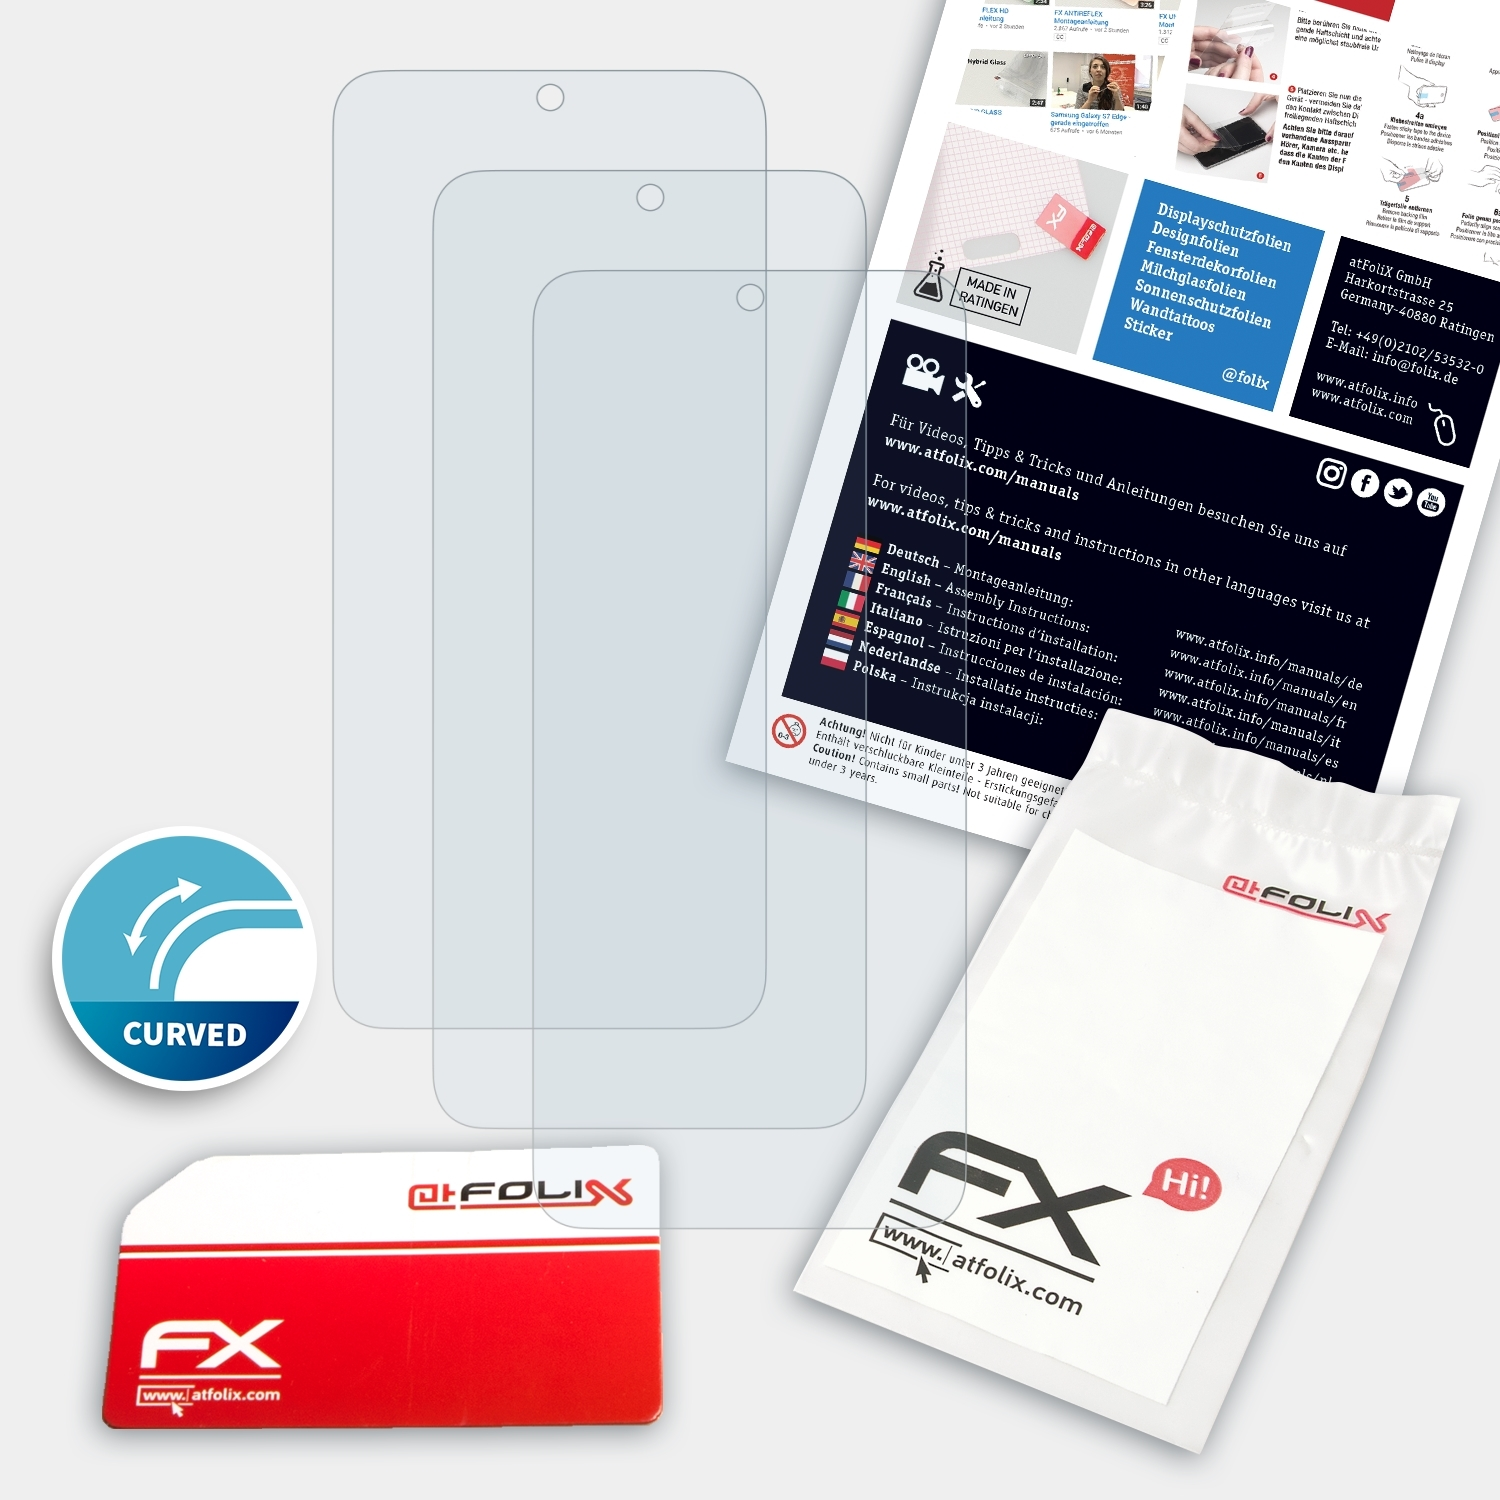 ATFOLIX 3x FX-ActiFleX S20) Samsung Galaxy Displayschutz(für